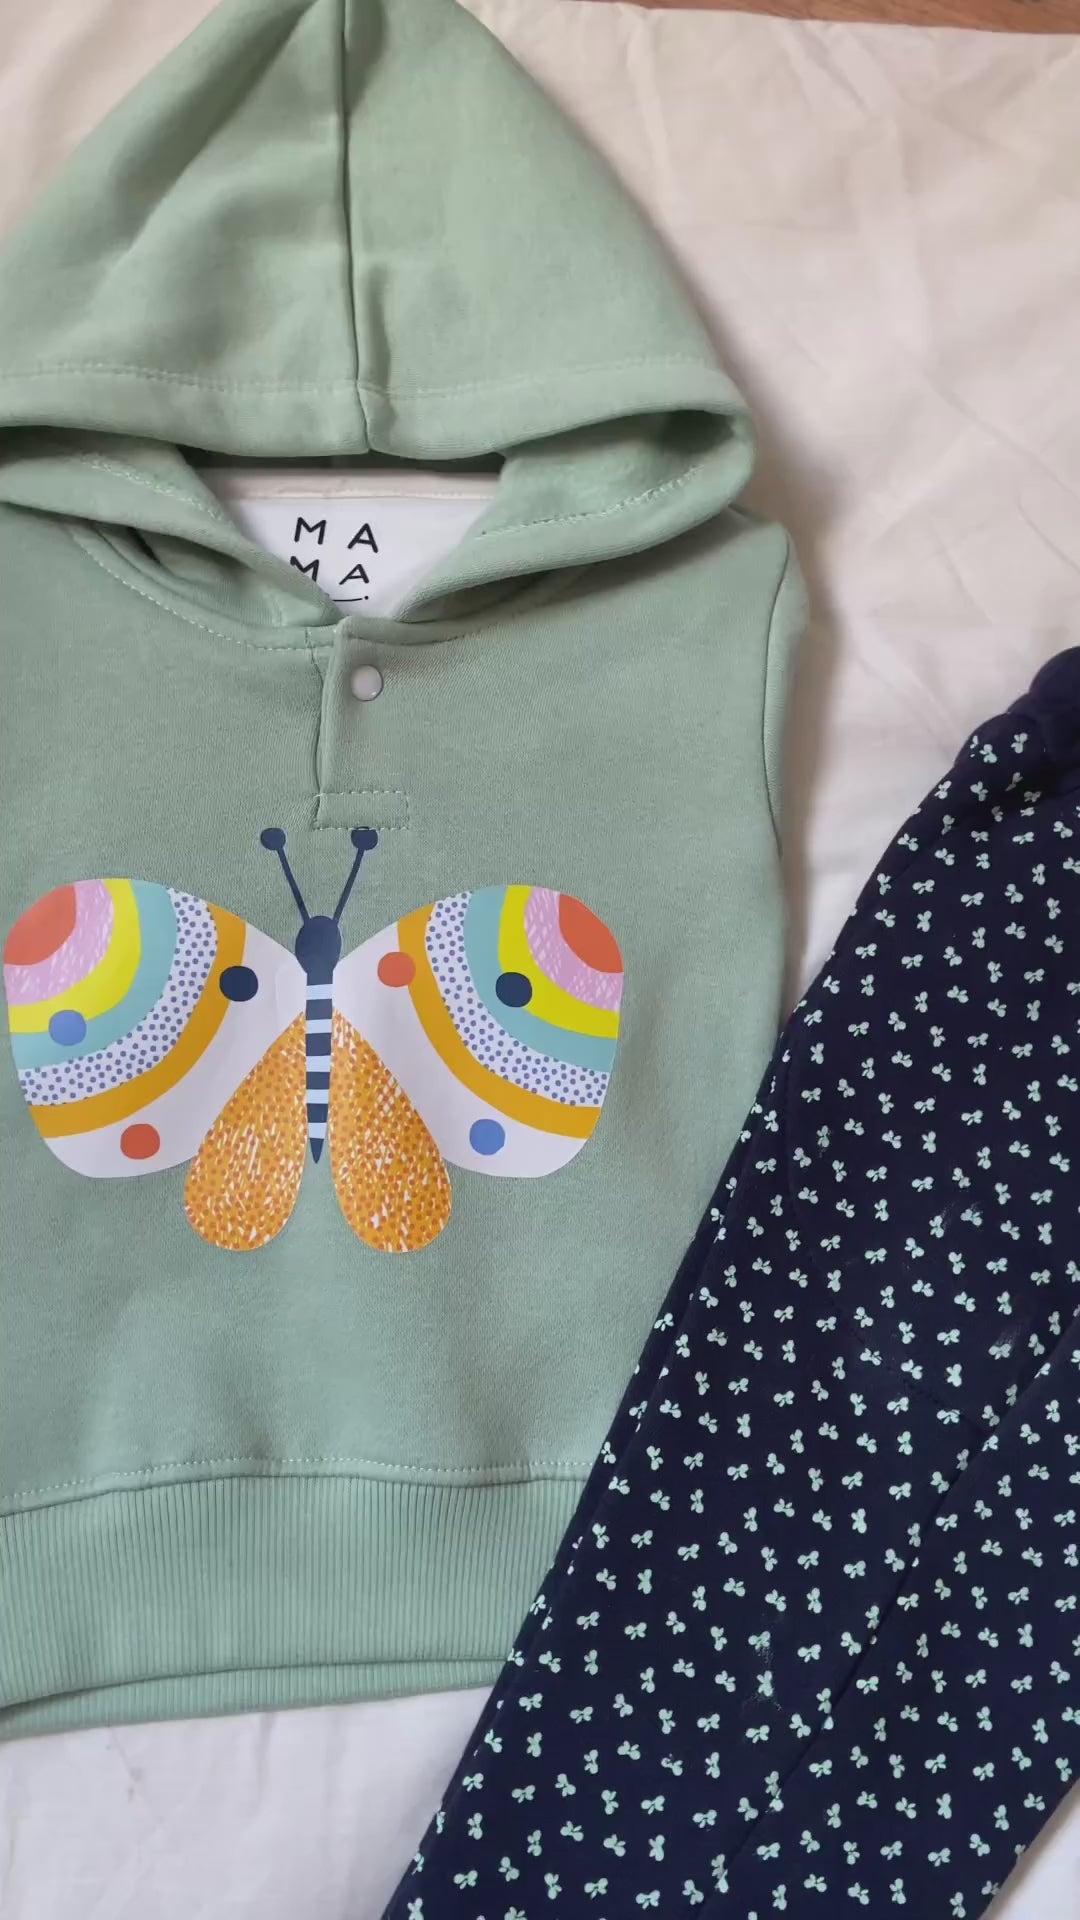 Rainbow 2-piece Sweatshirt Set